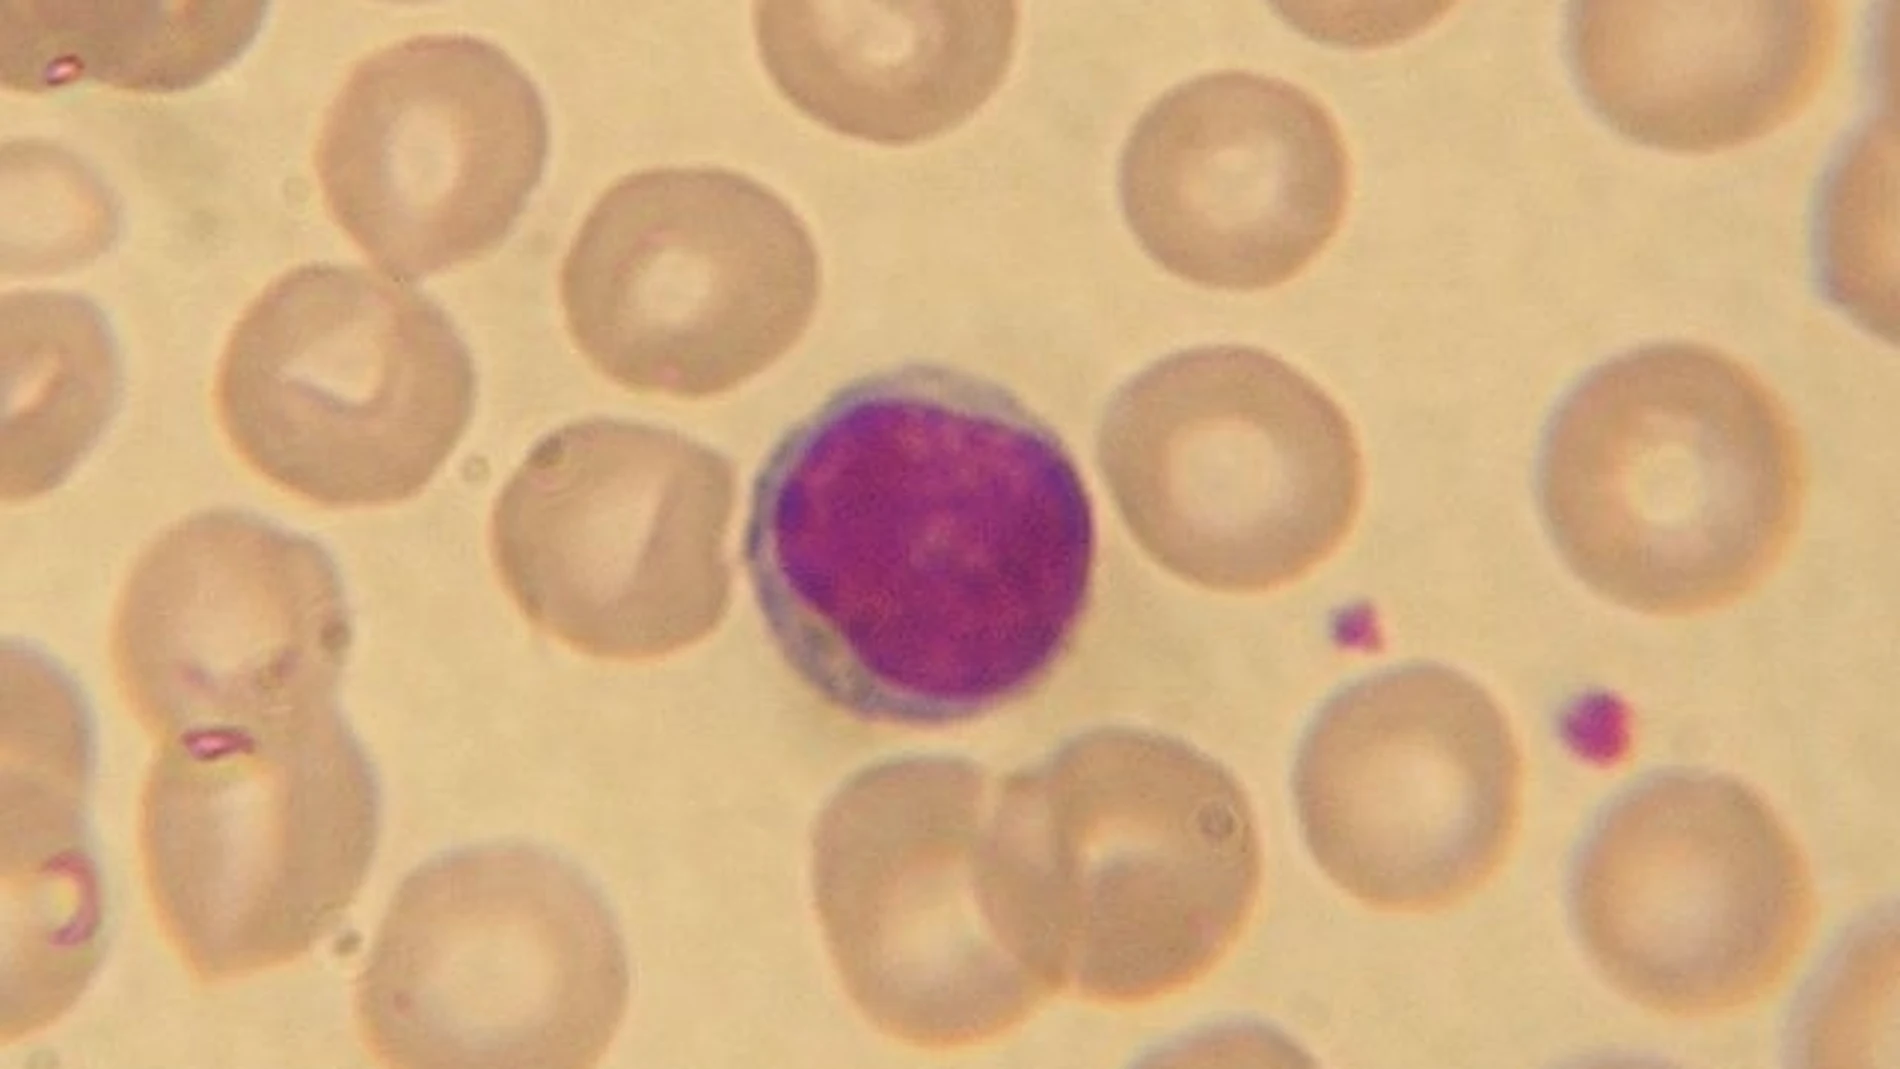 Imagen de un linfocito rodeado de glóbulos rojos